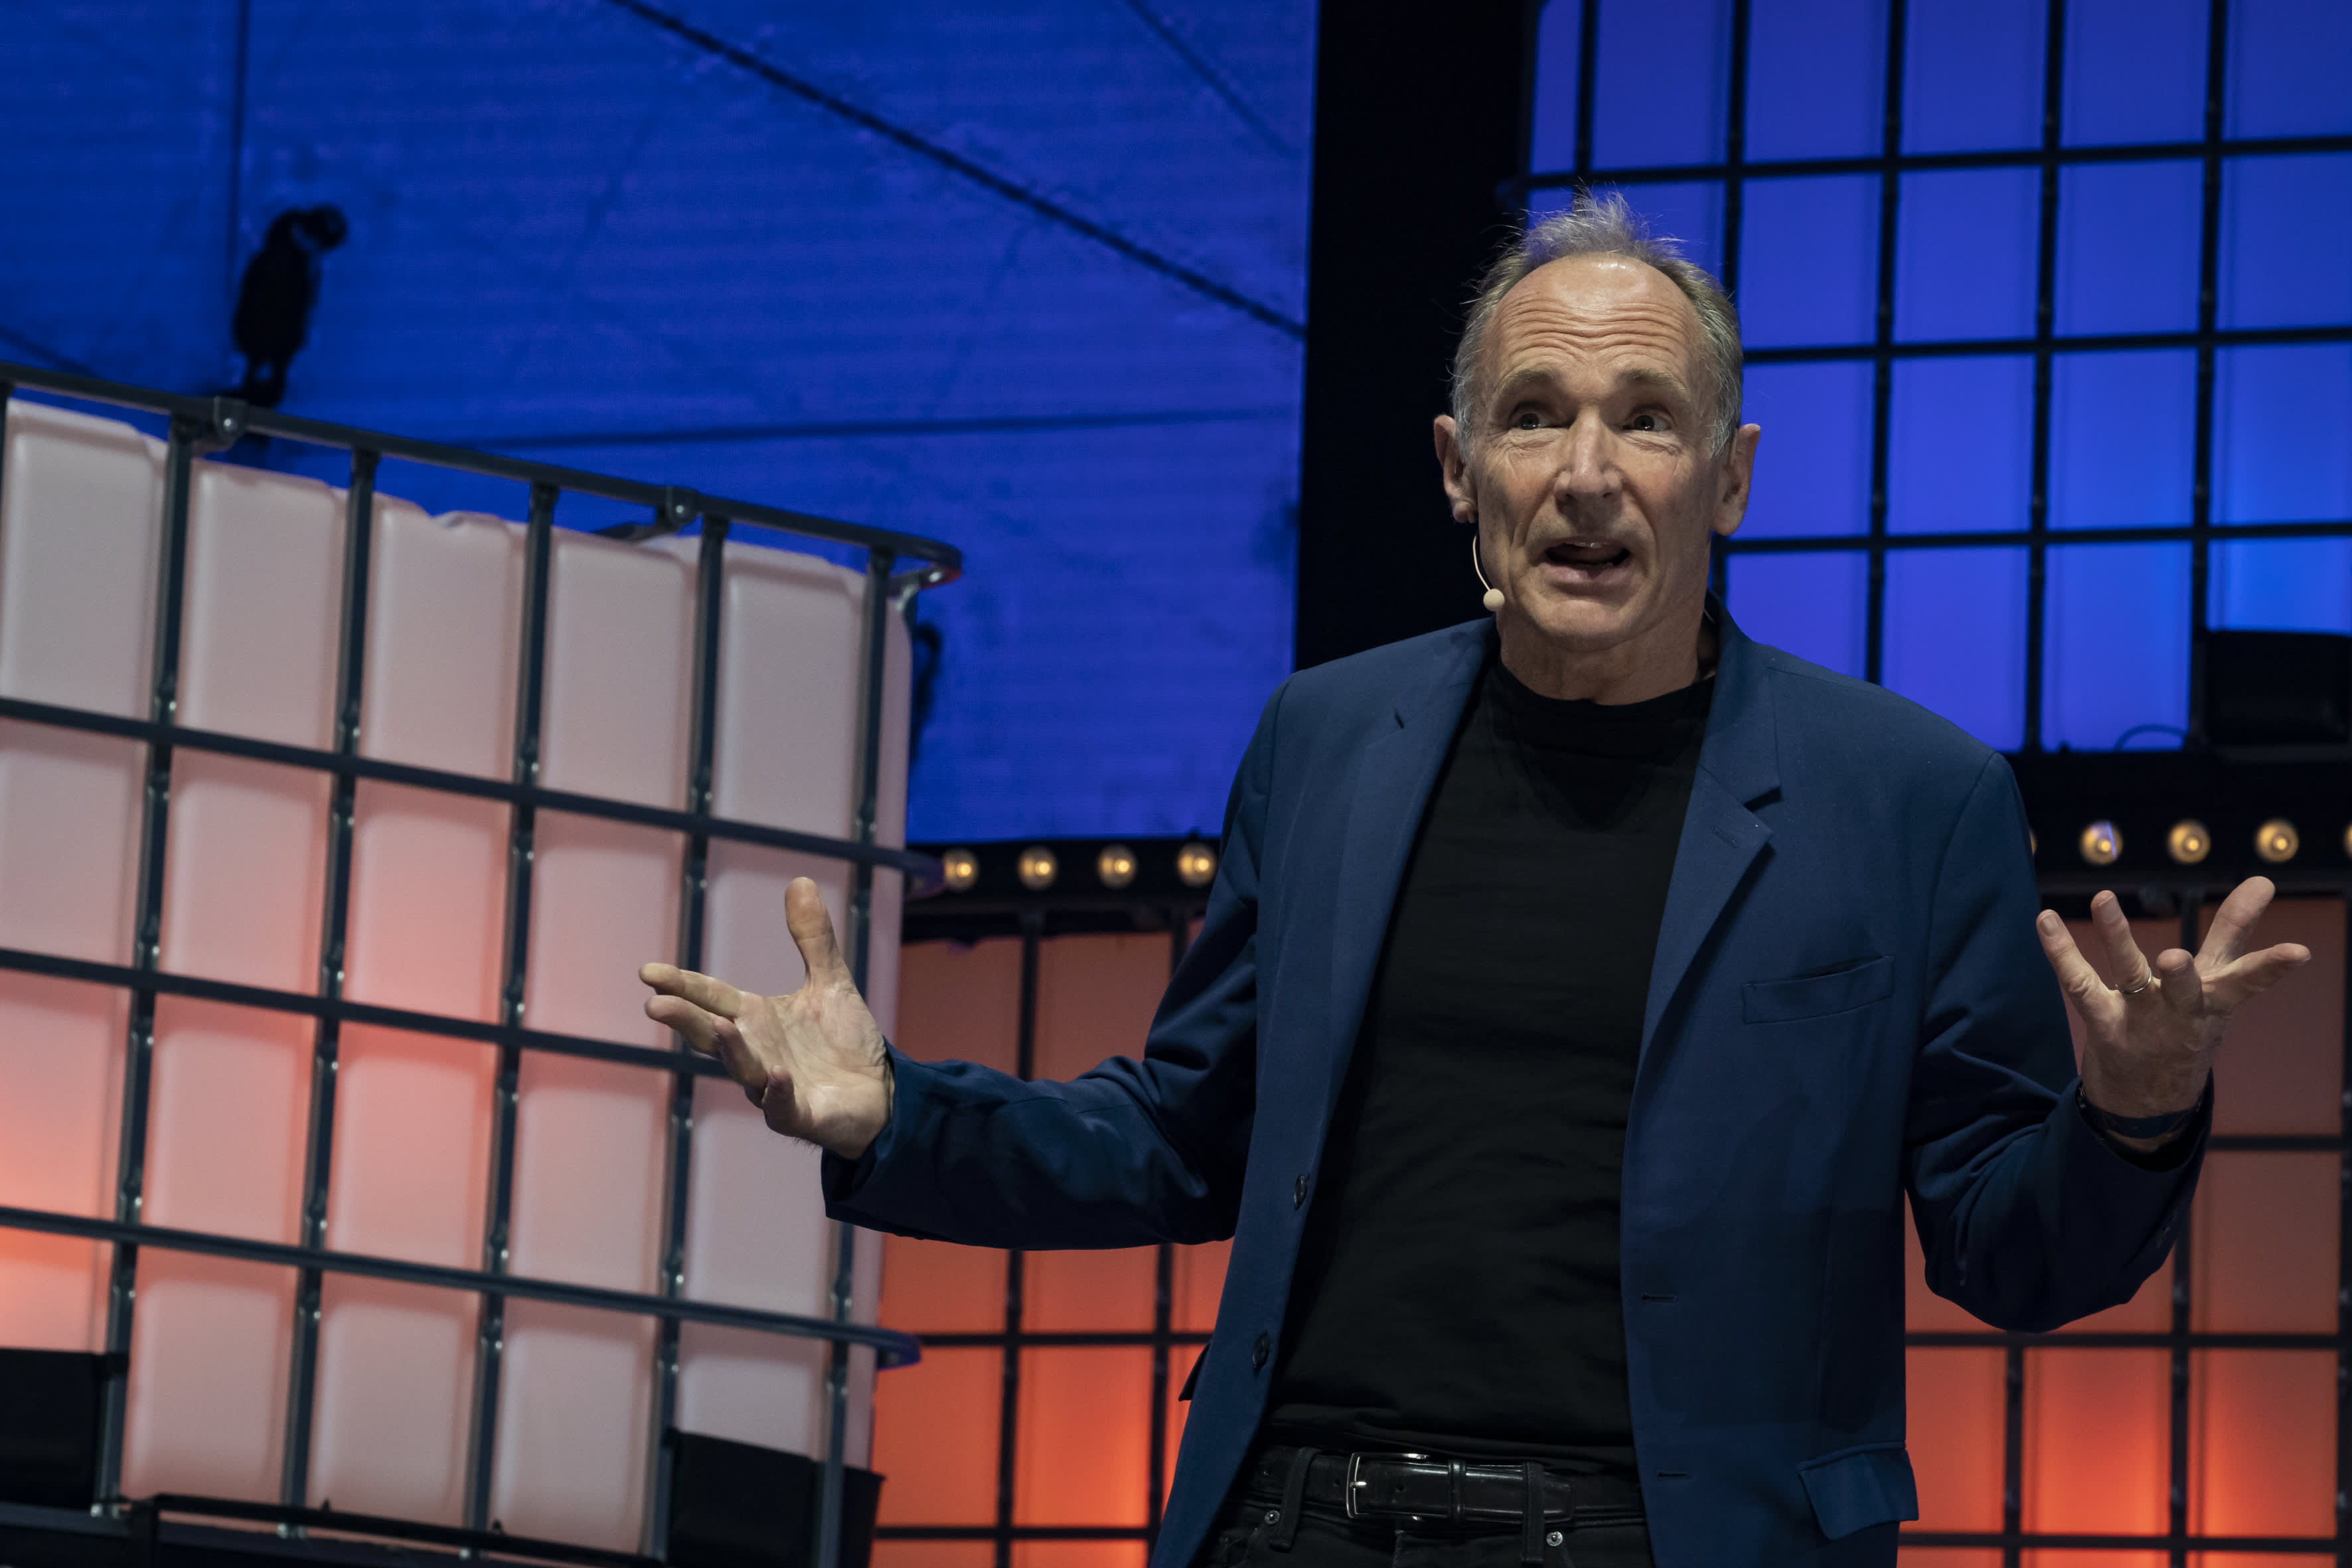 팀 버너스 리(Tim Berners-Lee)가 미래를 예측하다